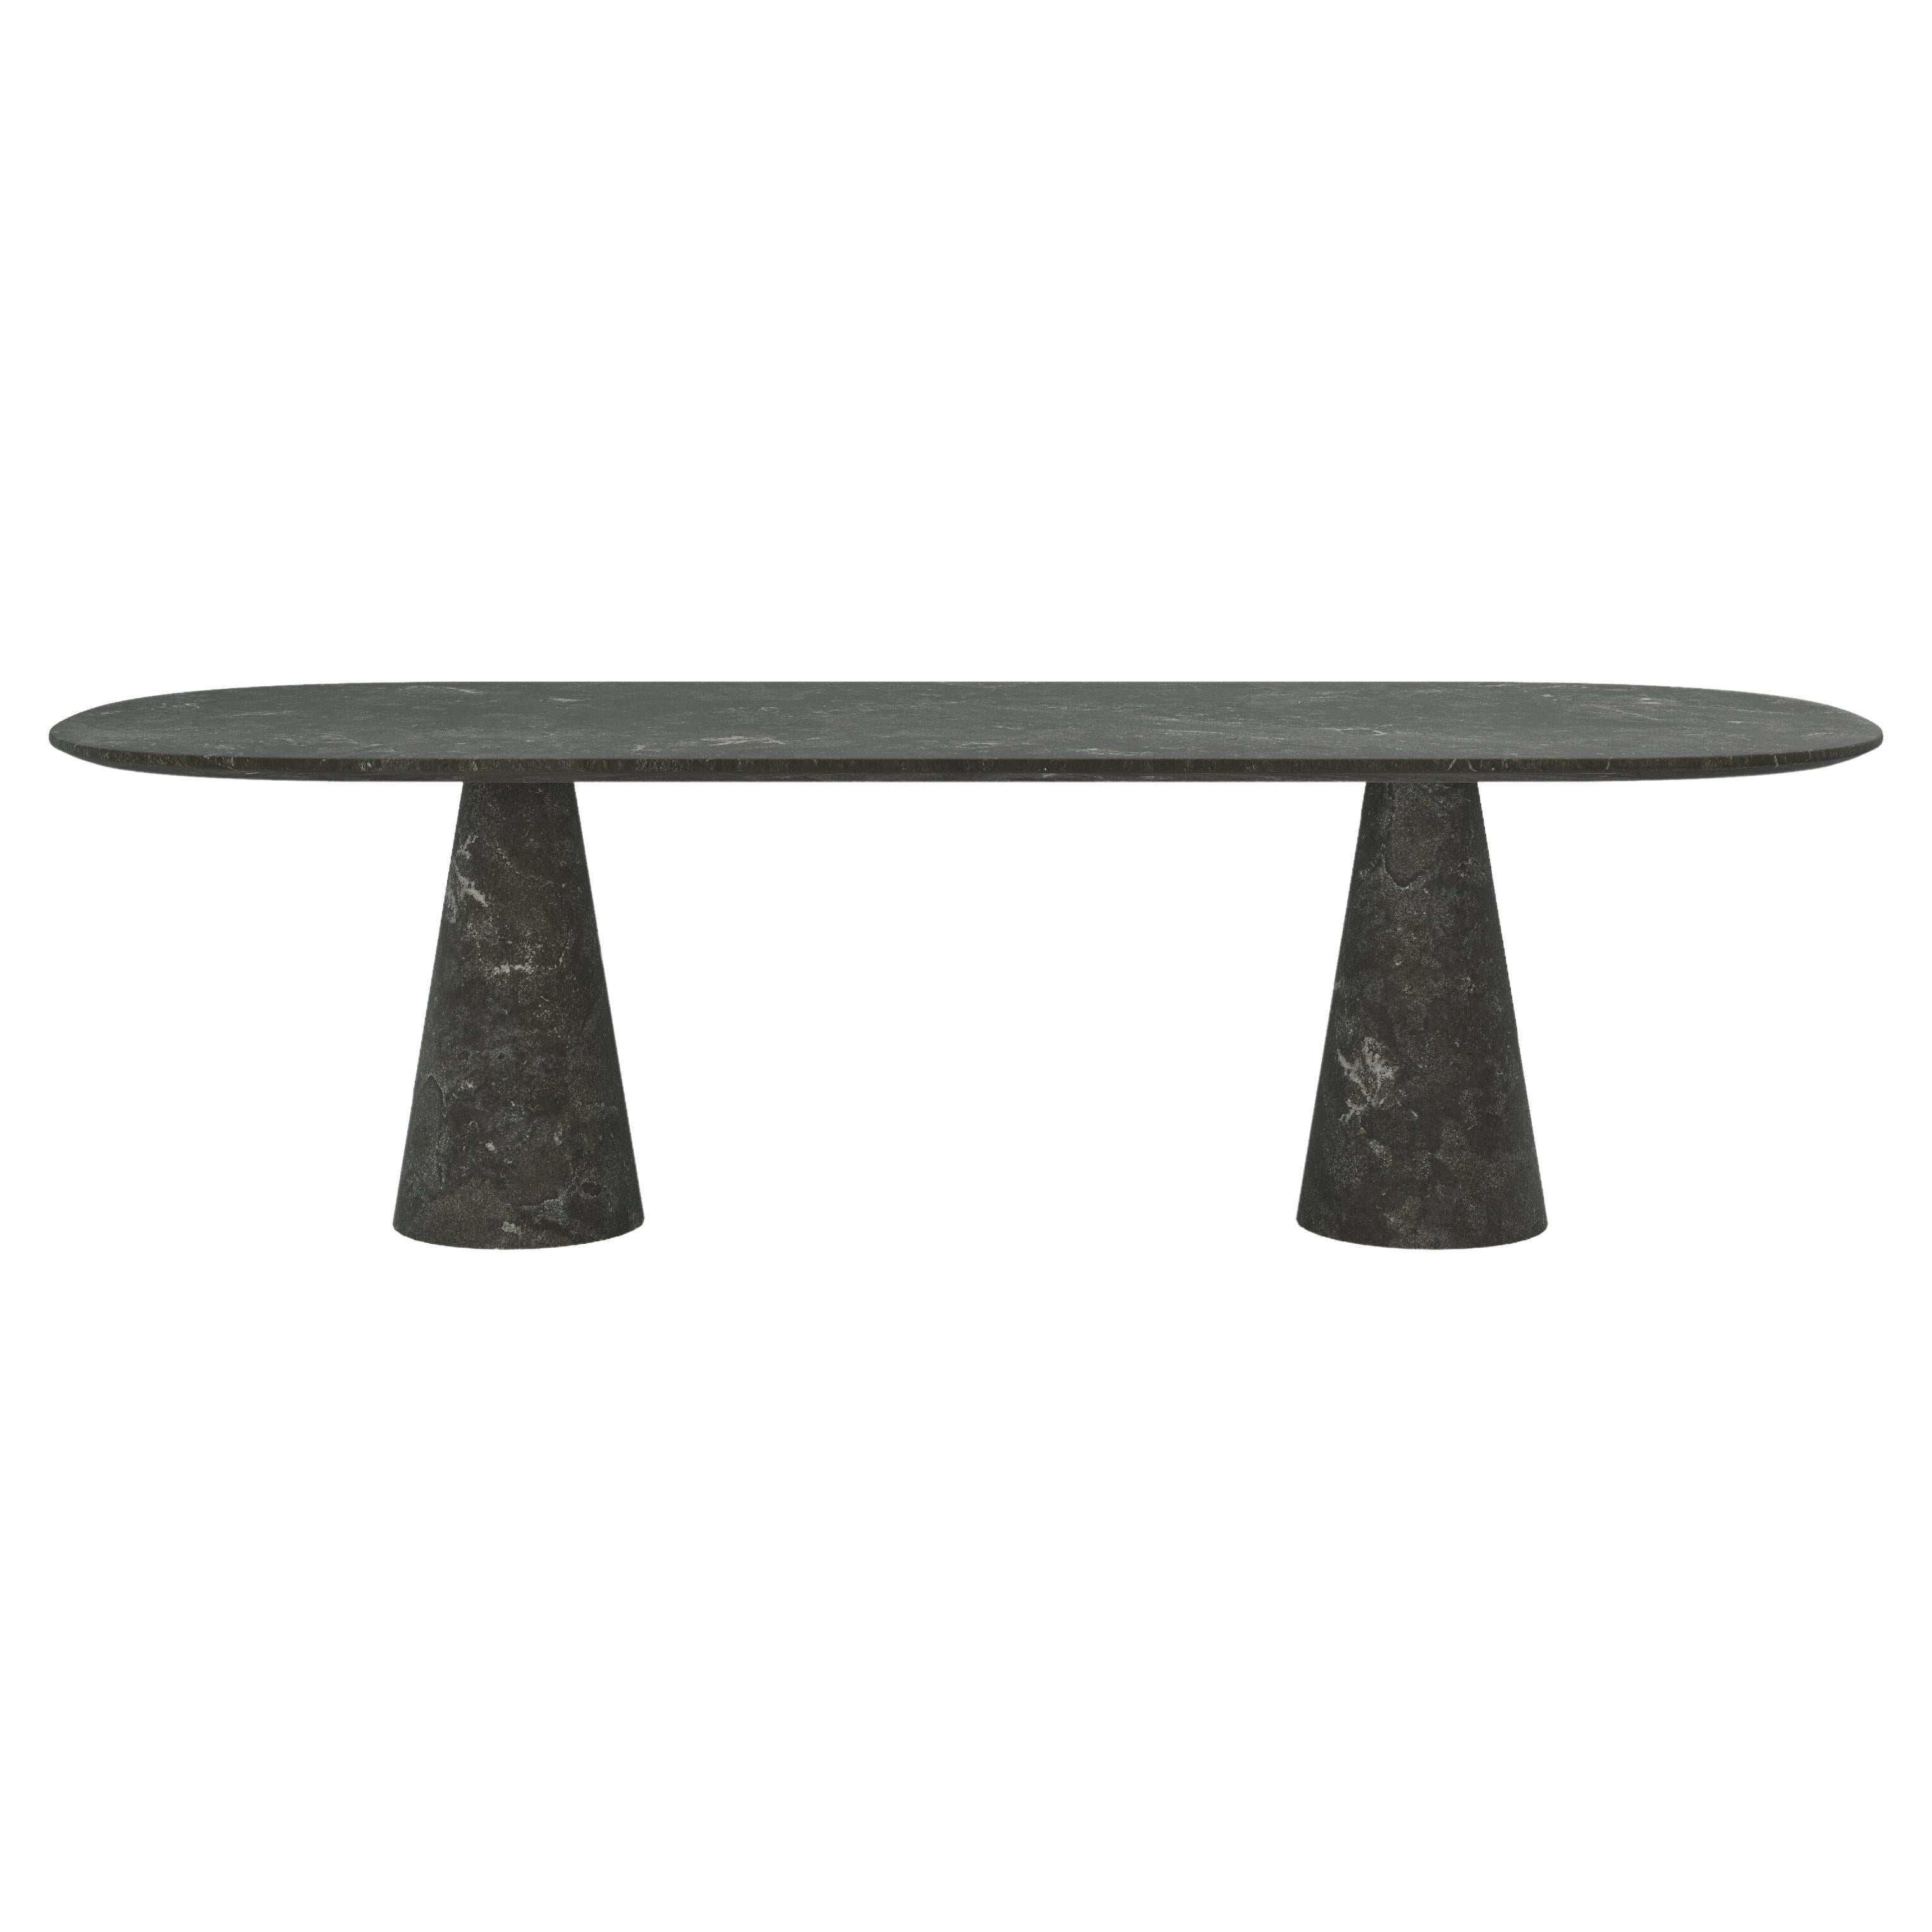 FORM(LA) Cono Oval Dining Table 108”L x 48”W x 30”H Nero Petite Granite For Sale